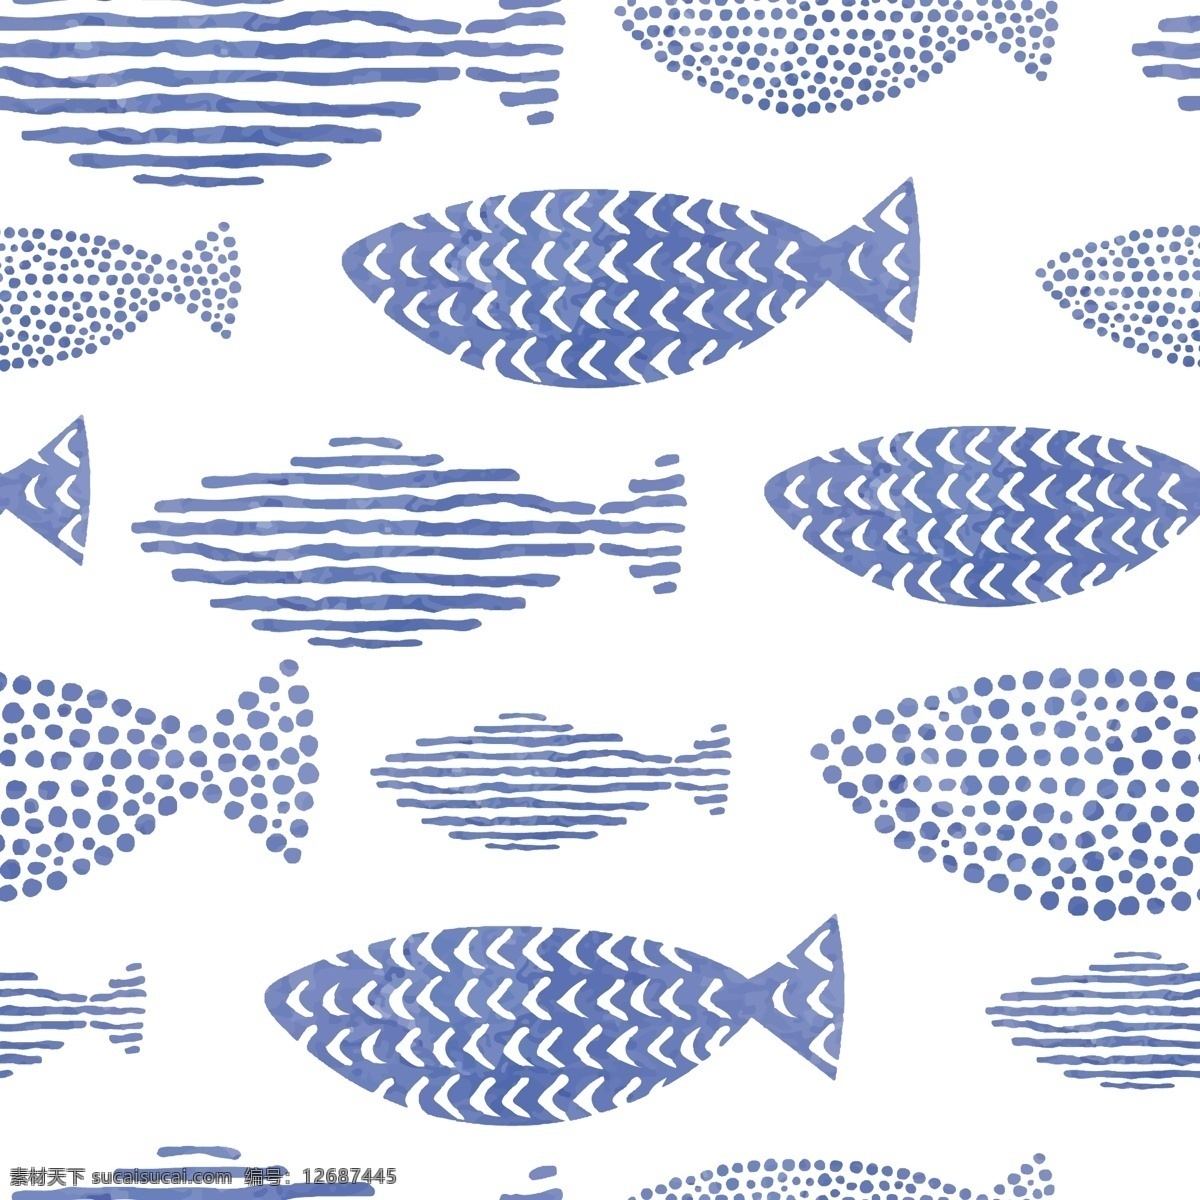 海洋 鱼 卡通 动漫 线 稿 印花 循环 线稿 动物世界 海洋鱼 通动漫线稿